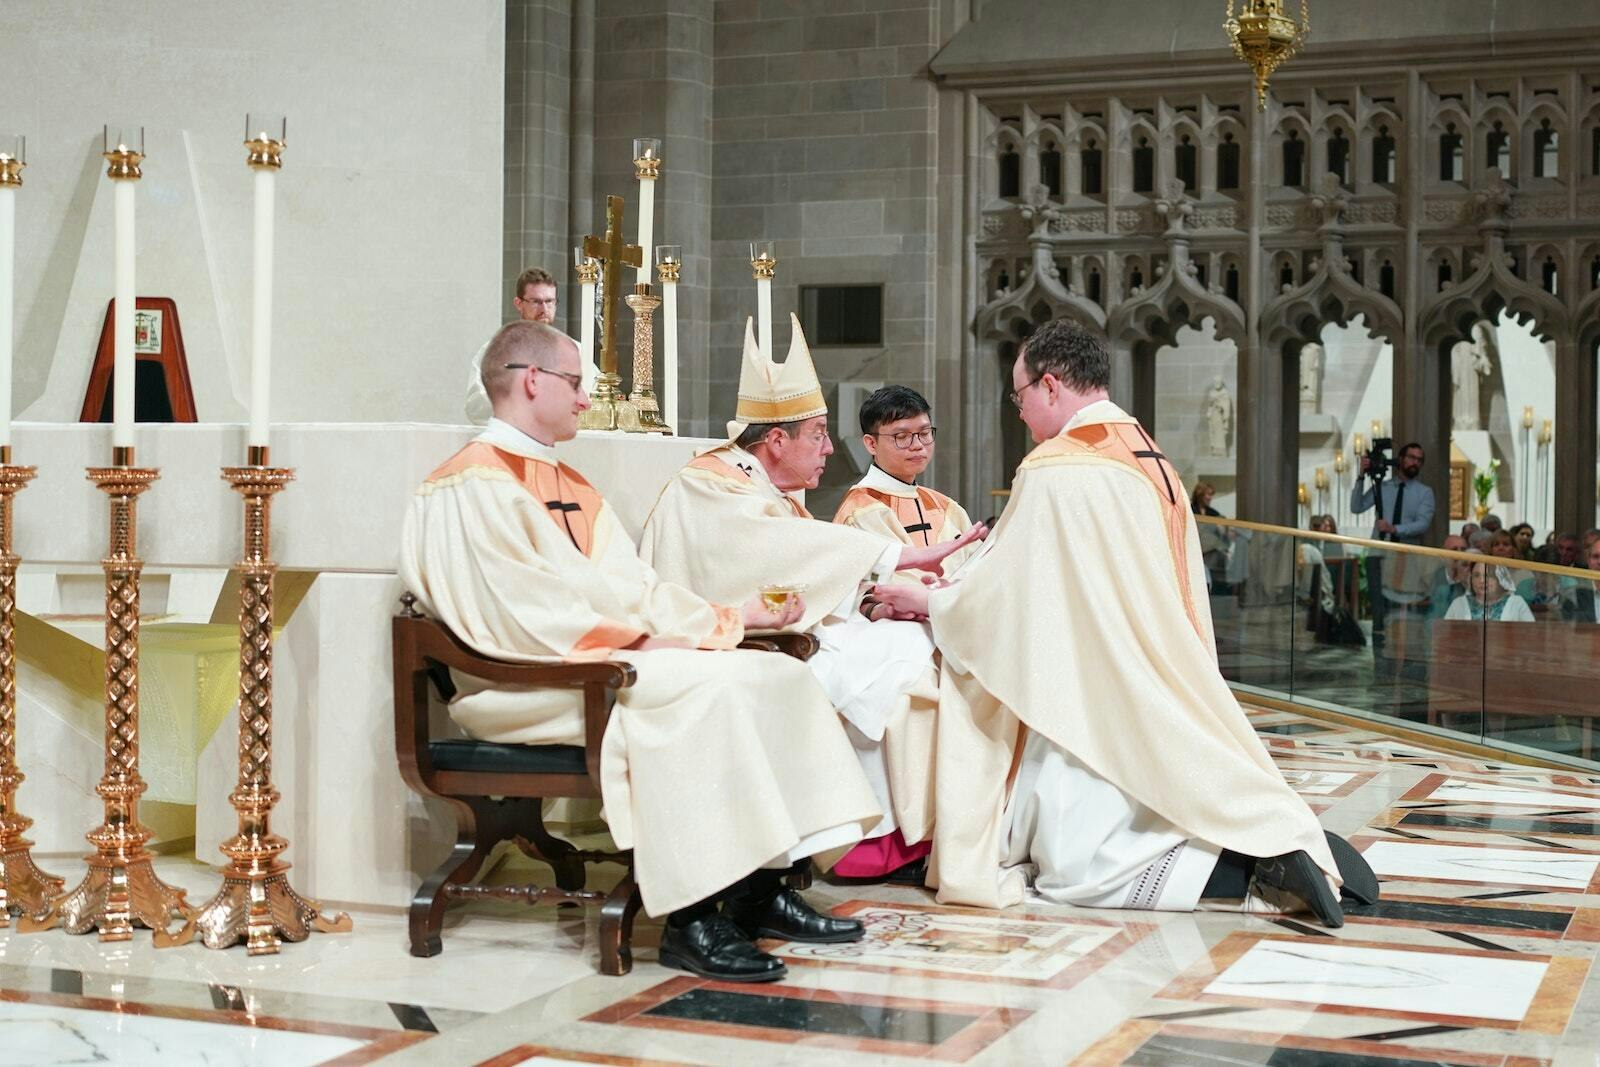 El Arzobispo Allen H. Vigneron unge las manos del padre Richard Dorsch con Santo Crisma después de ordenarlo sacerdote.